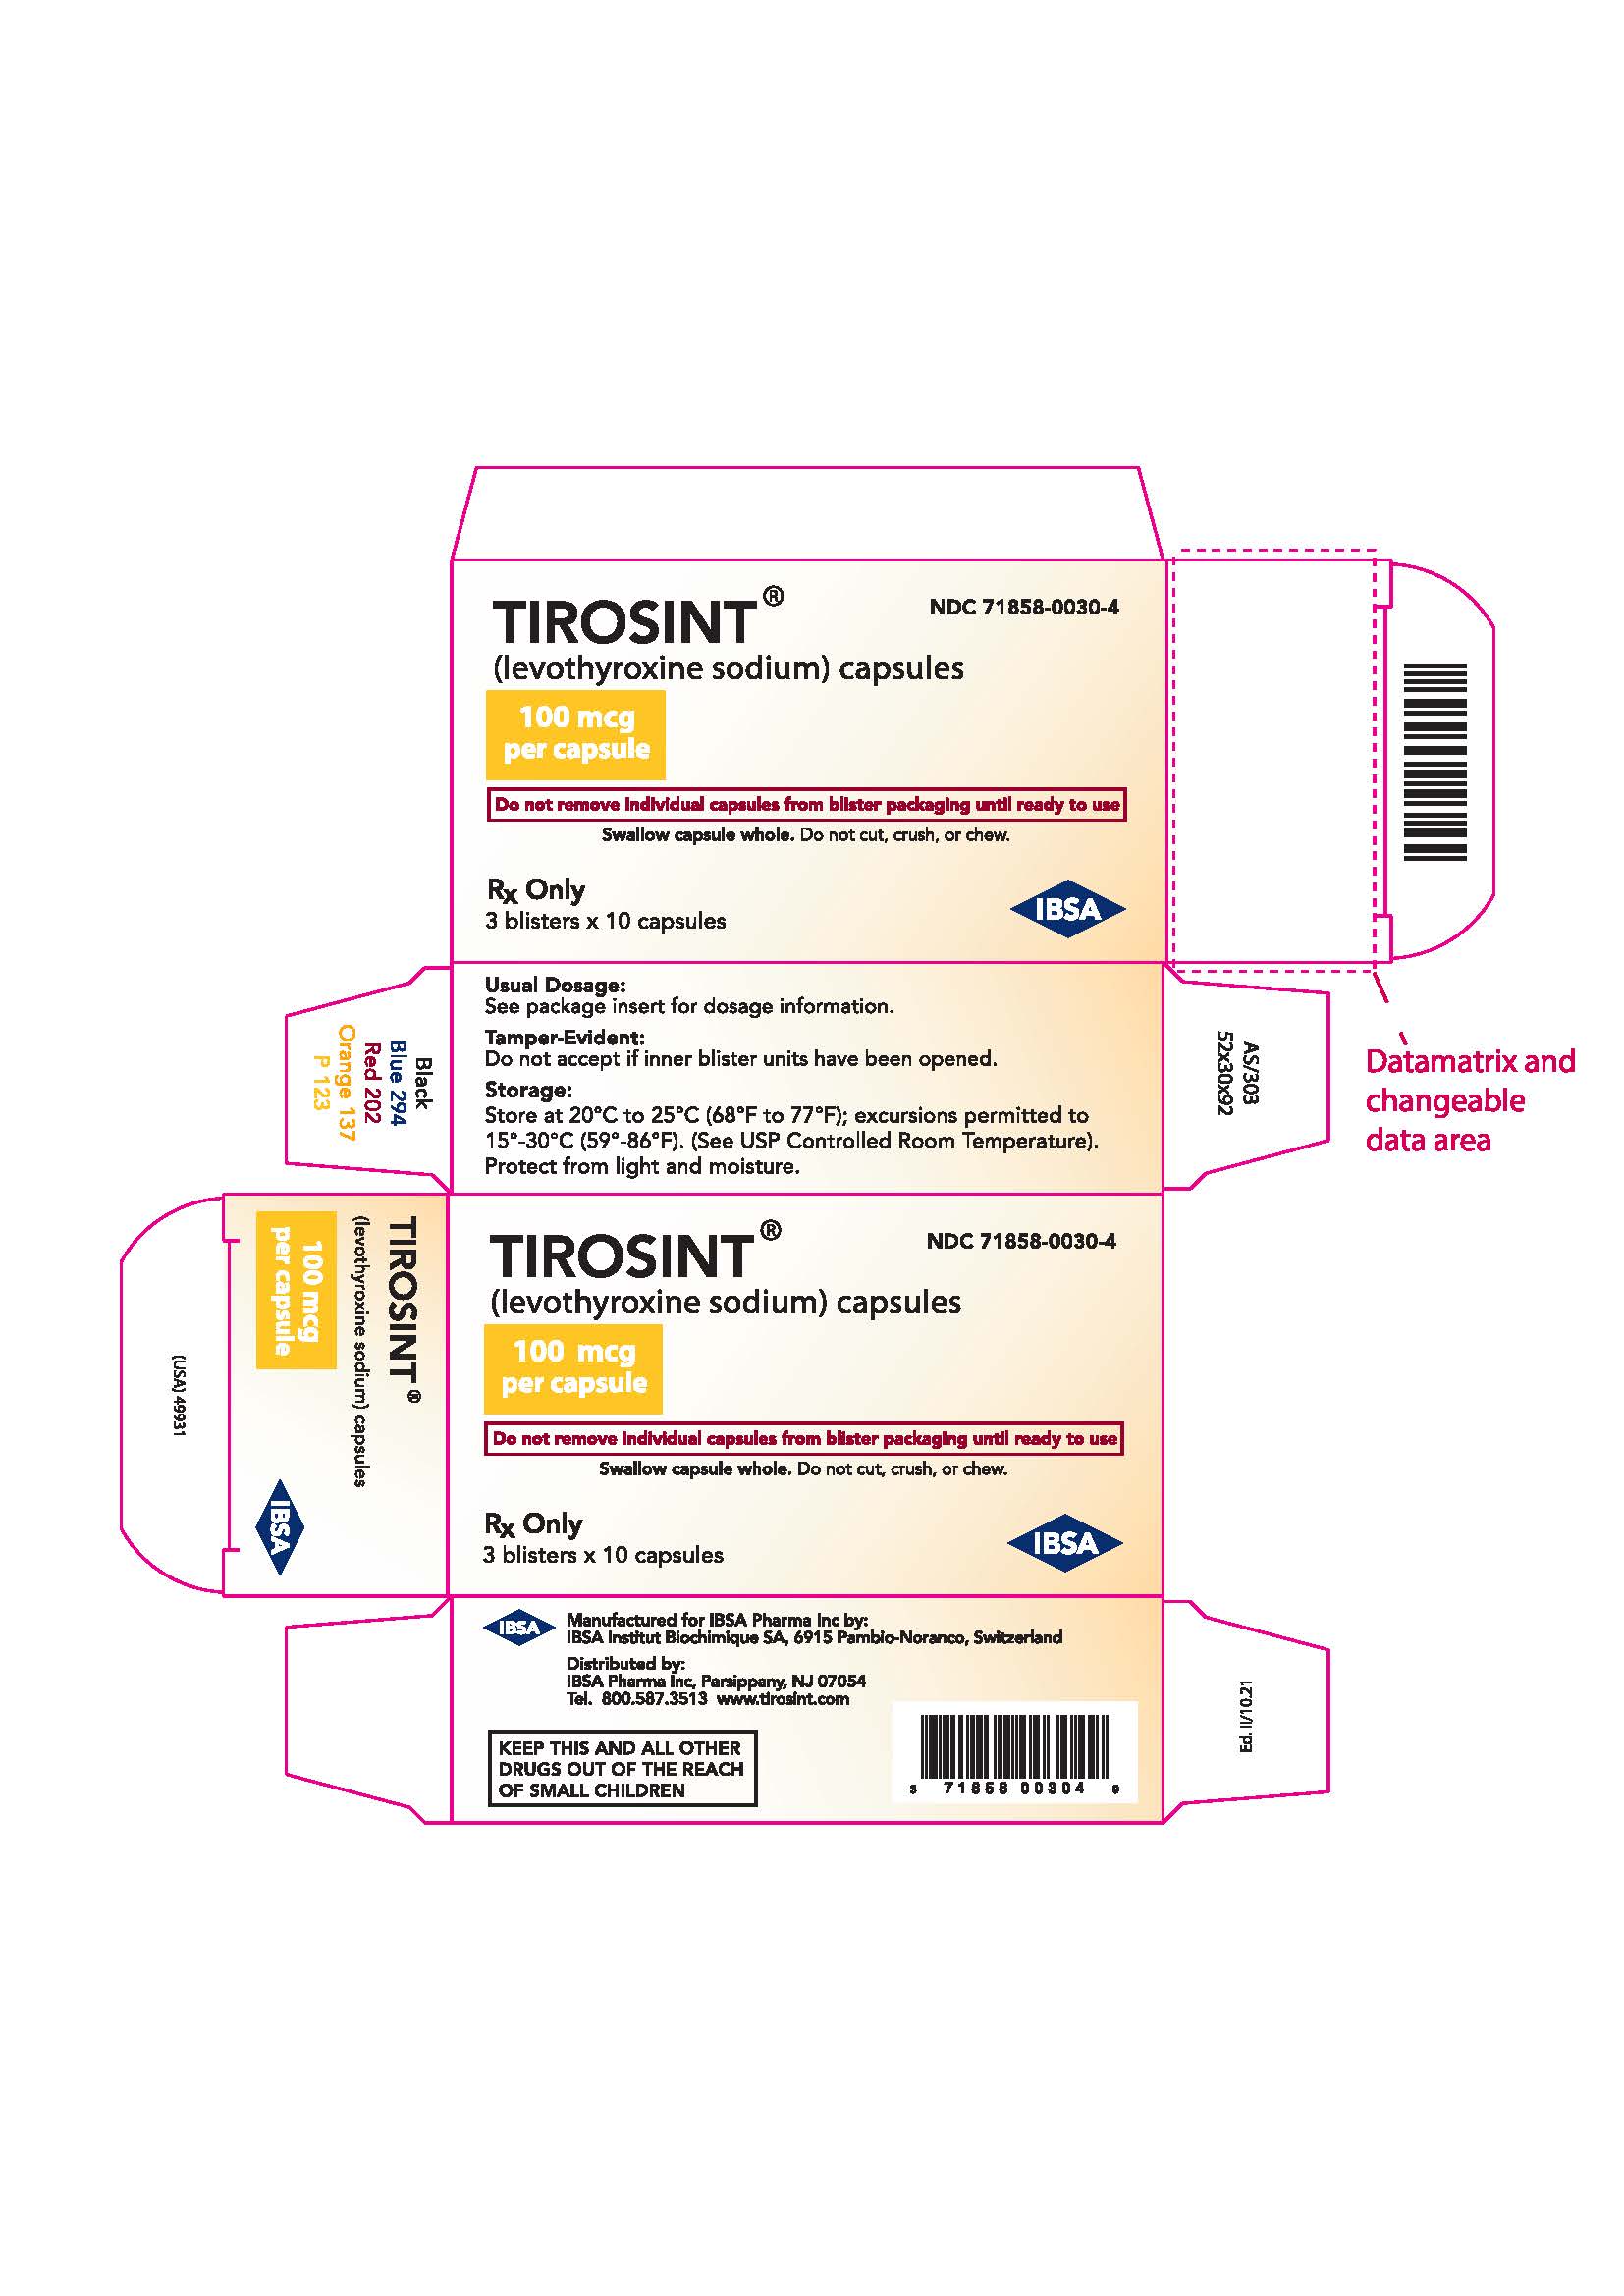 ndc-pricing-71858-0010-4-tirosint-capsule-oral